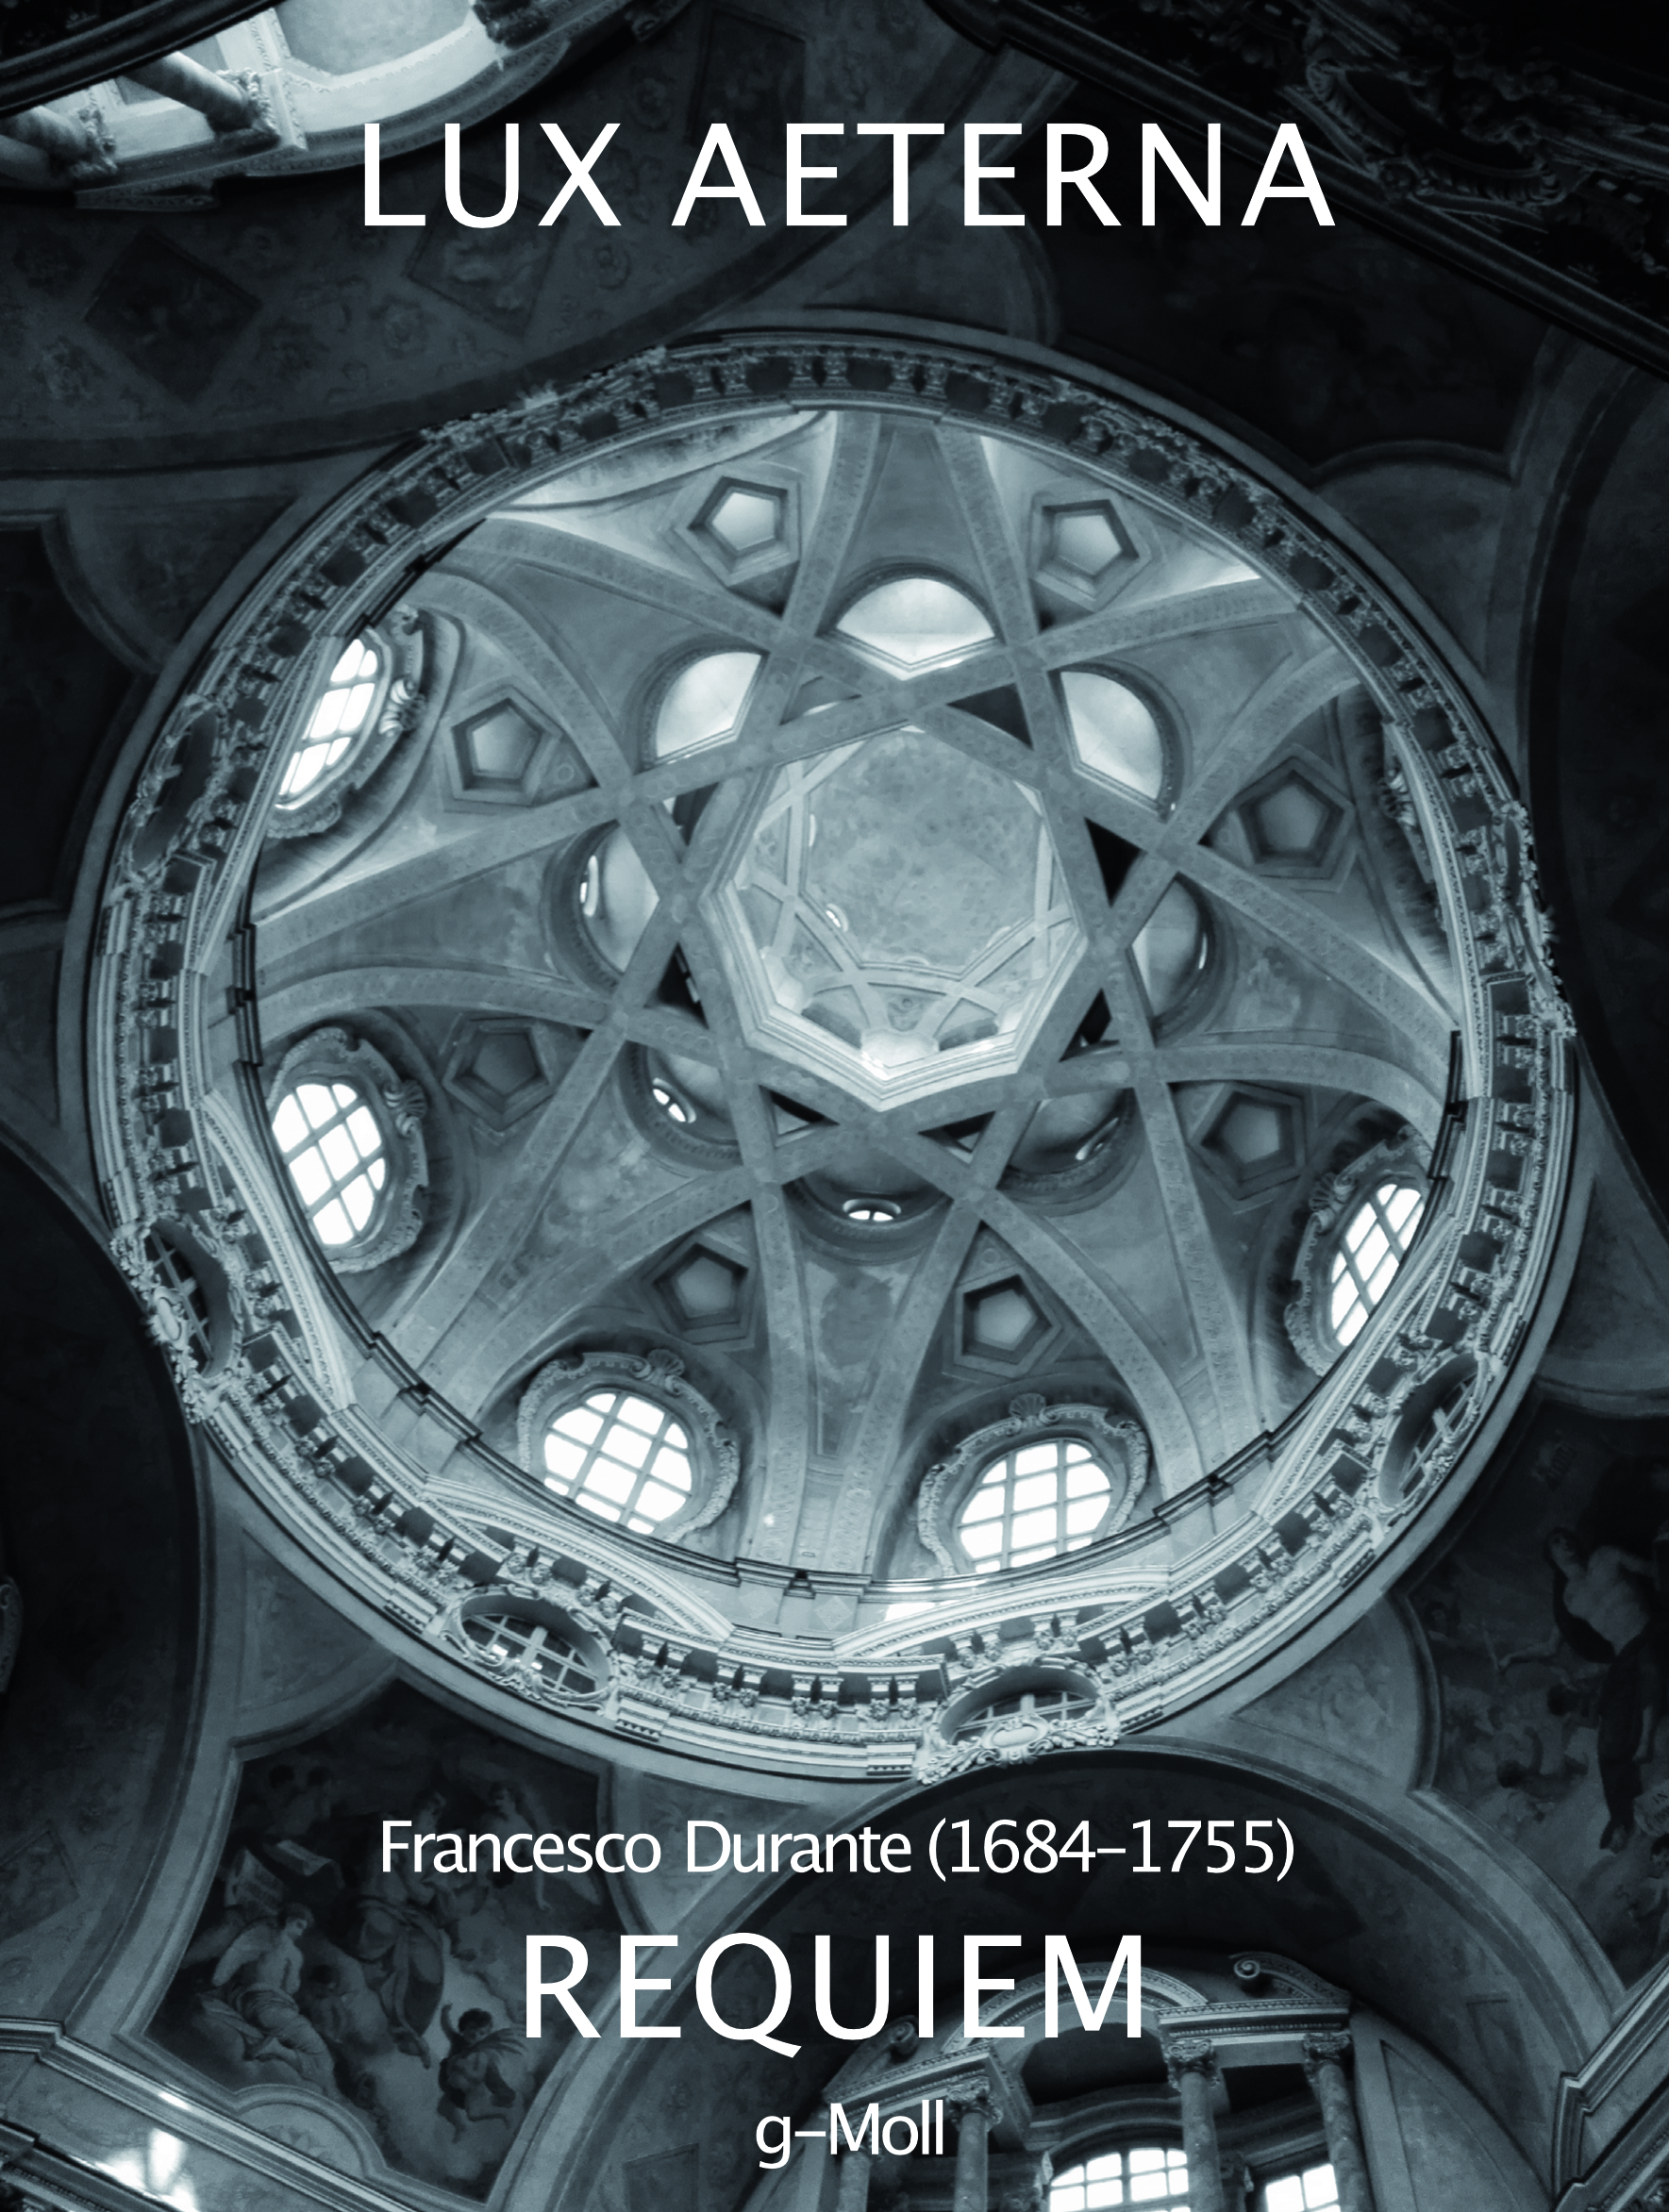 Bild einer Kirchen Kuppel. Text: Lux Aeterna. Francesco Durante, Requiem